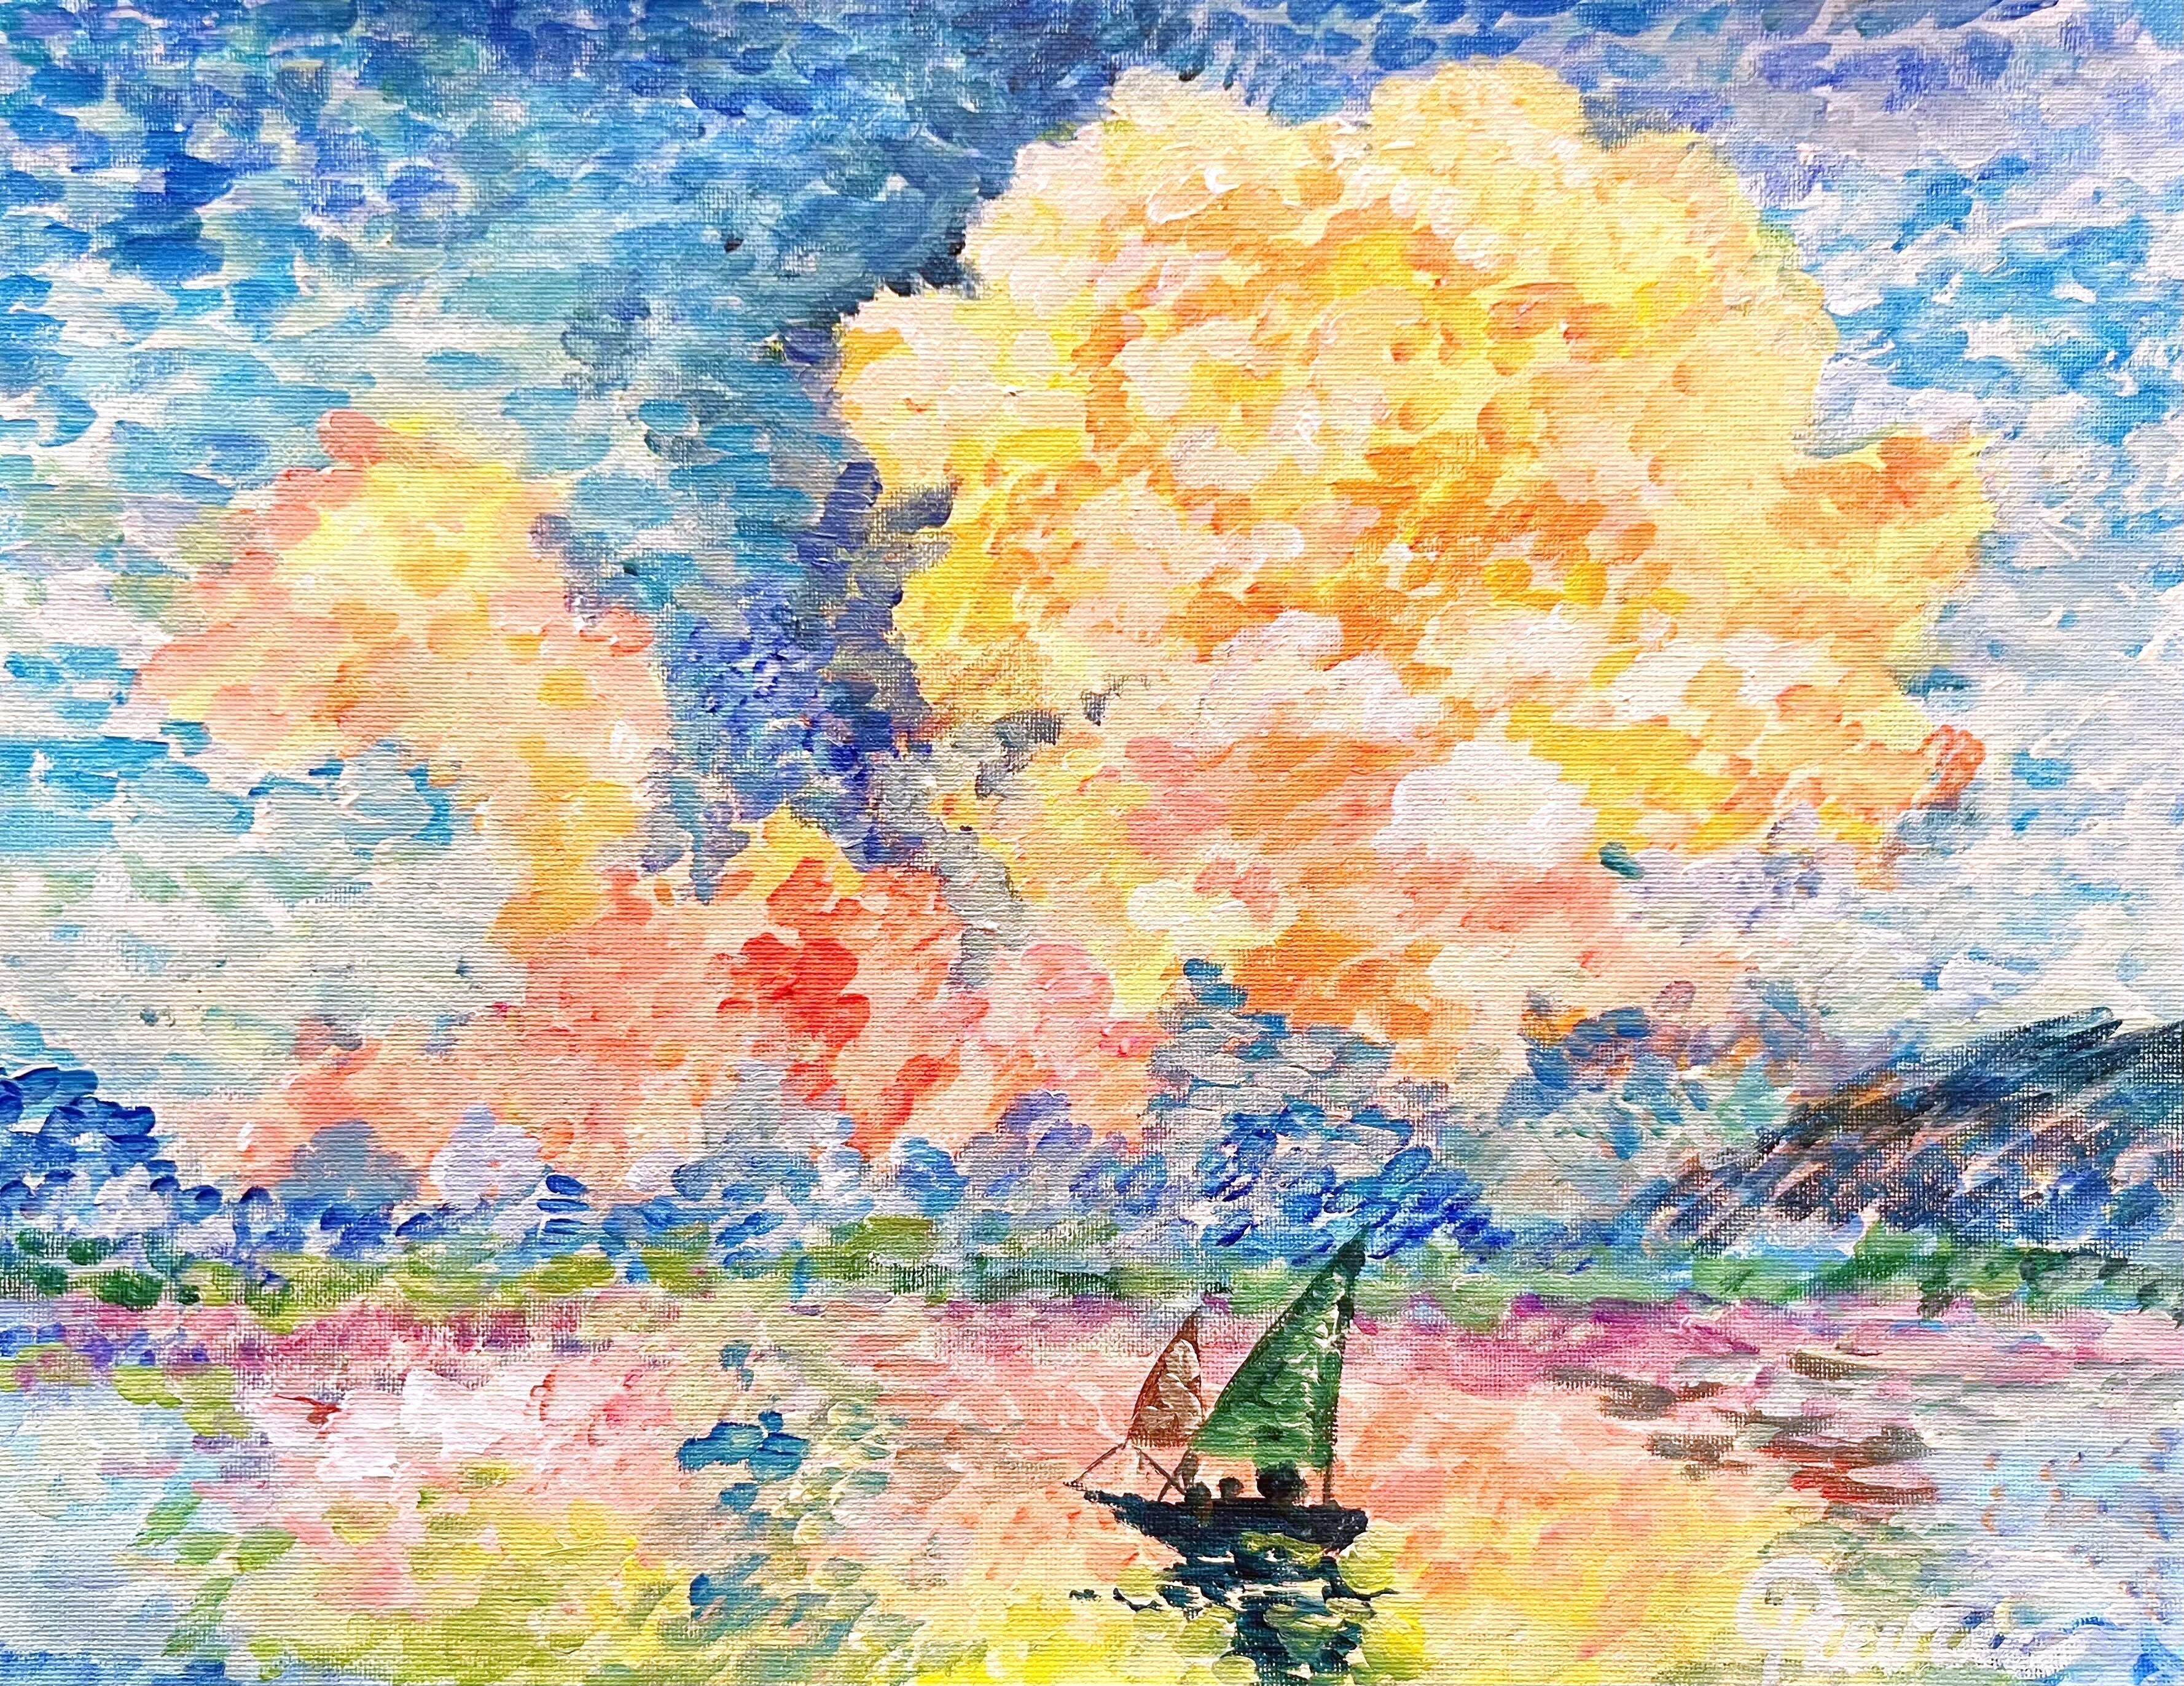 【日本橋】2月23日 (金祝) 18:00-21:00 | ポール・シニャック | ピンク雲 (Antibes, the Pink Cloud by Paul Signac at Nihon-bashi)